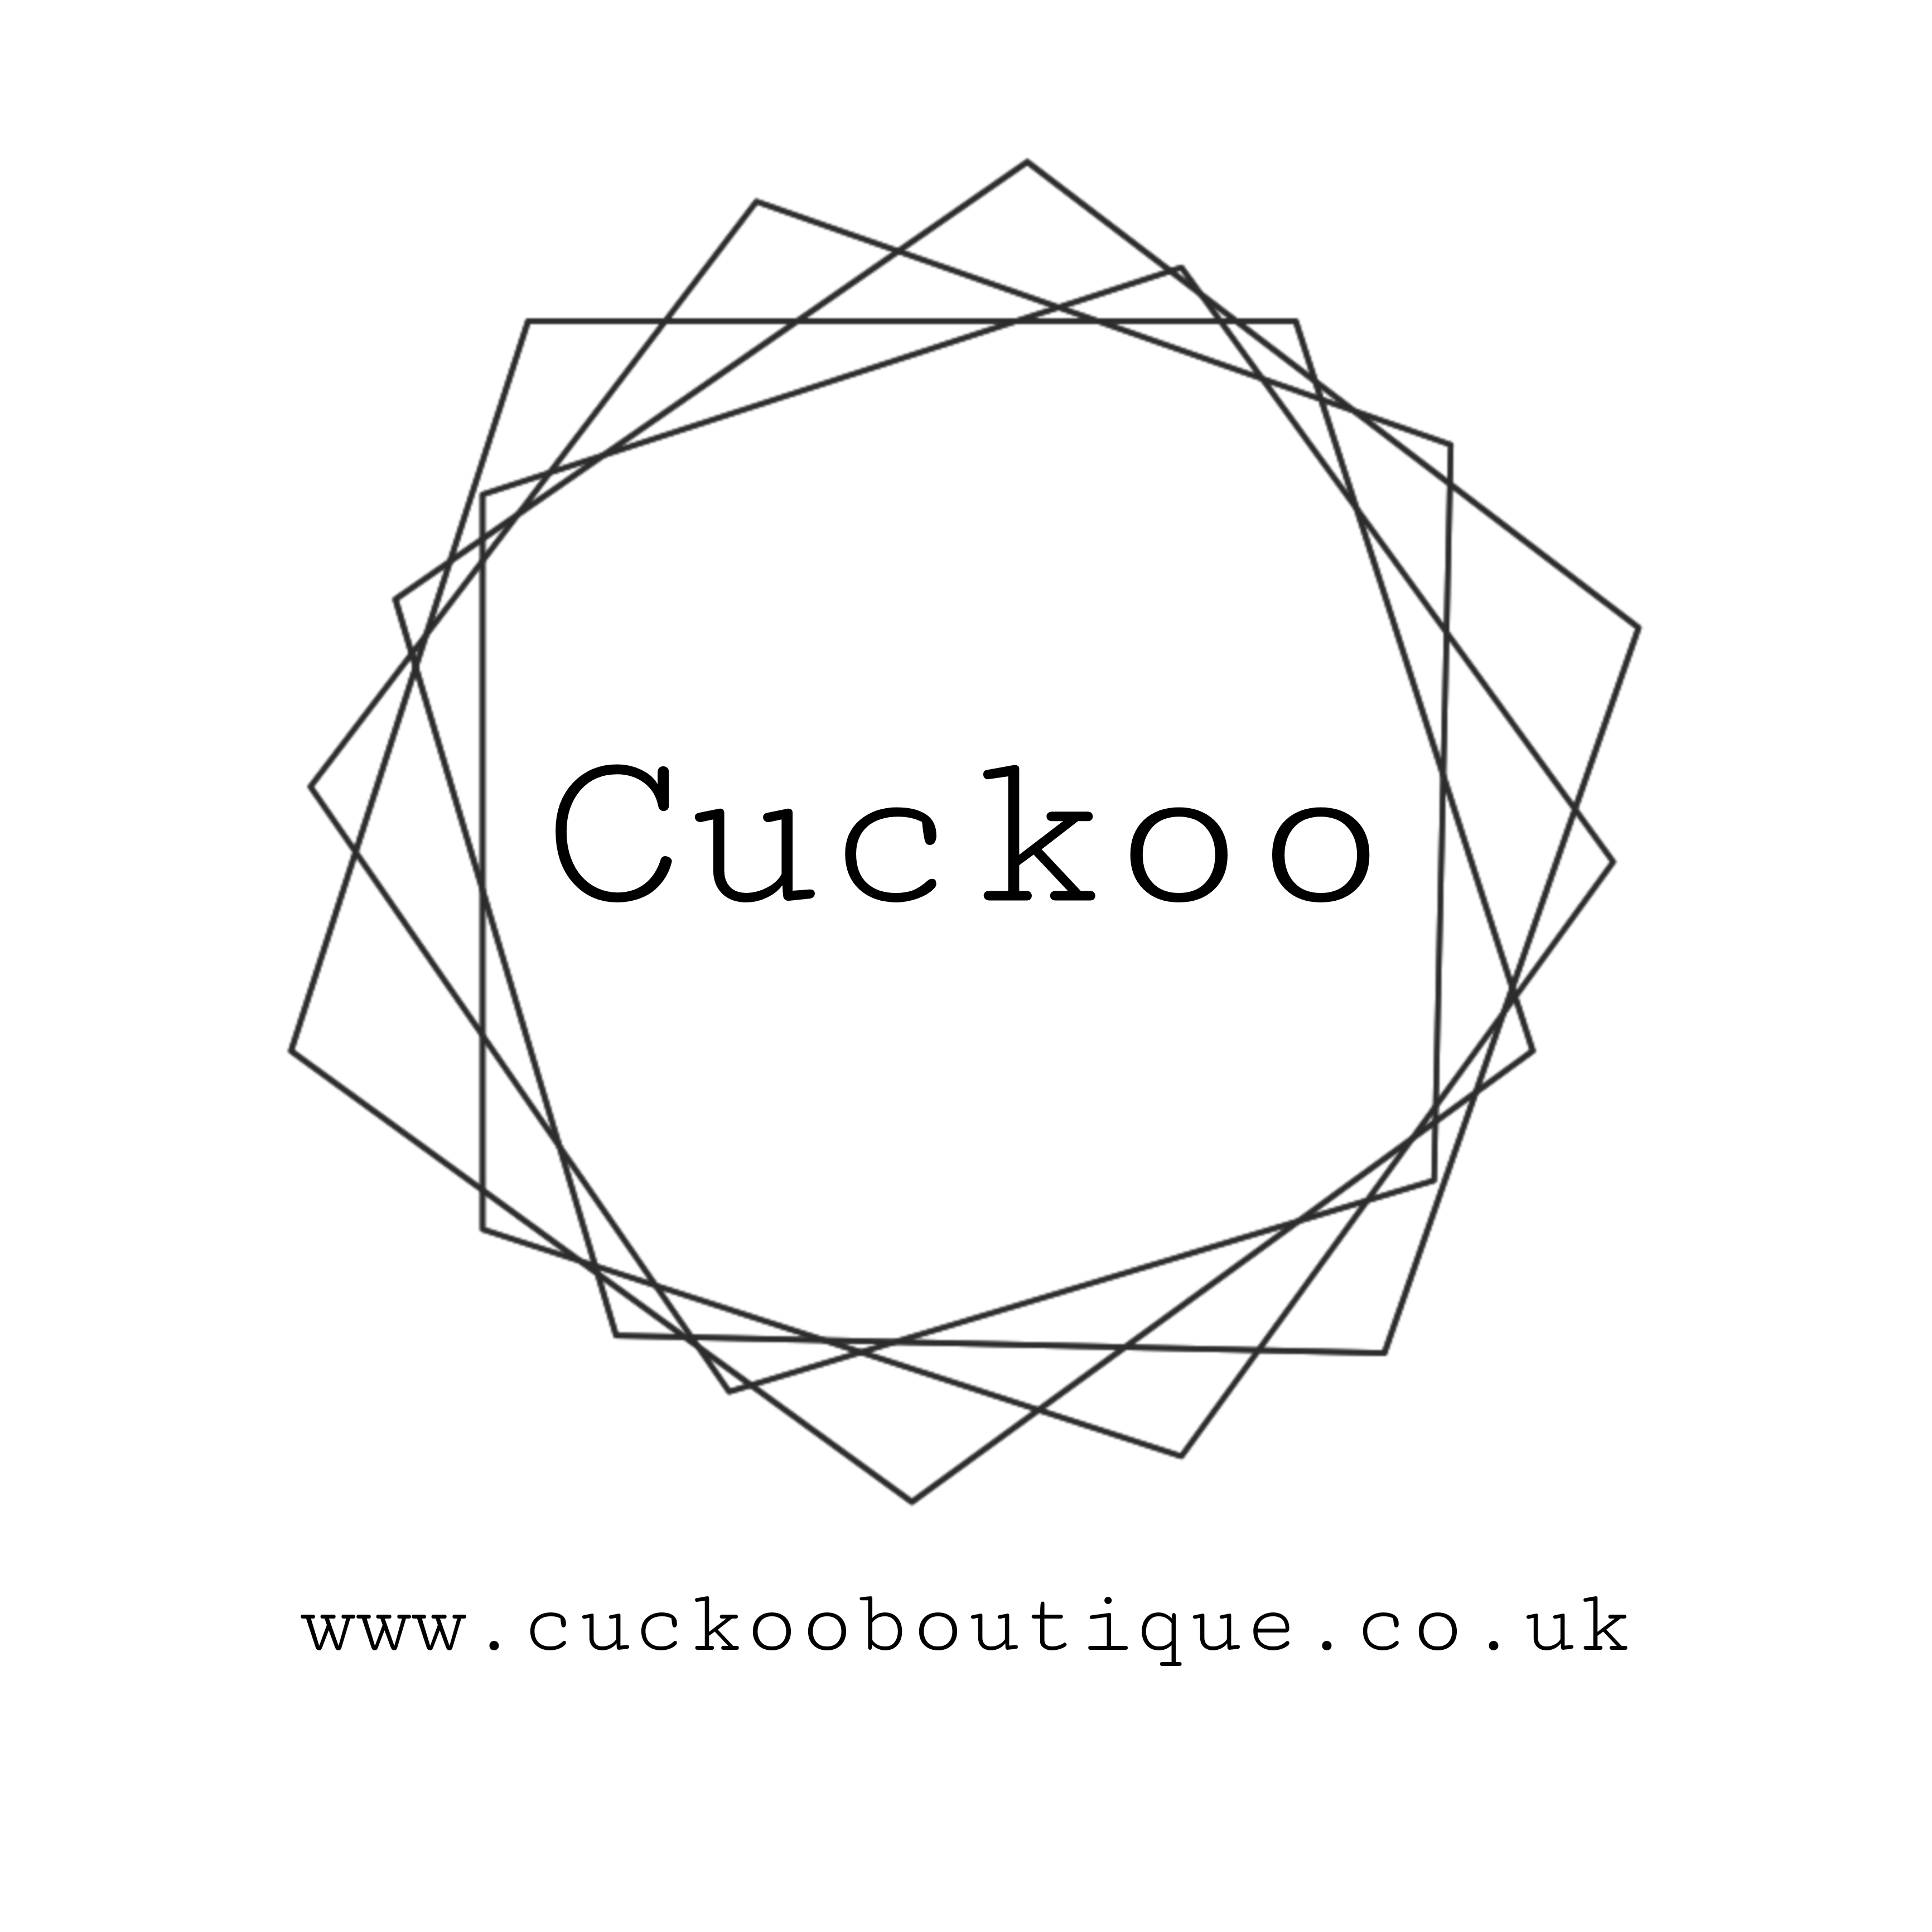 Cuckoo Boutique